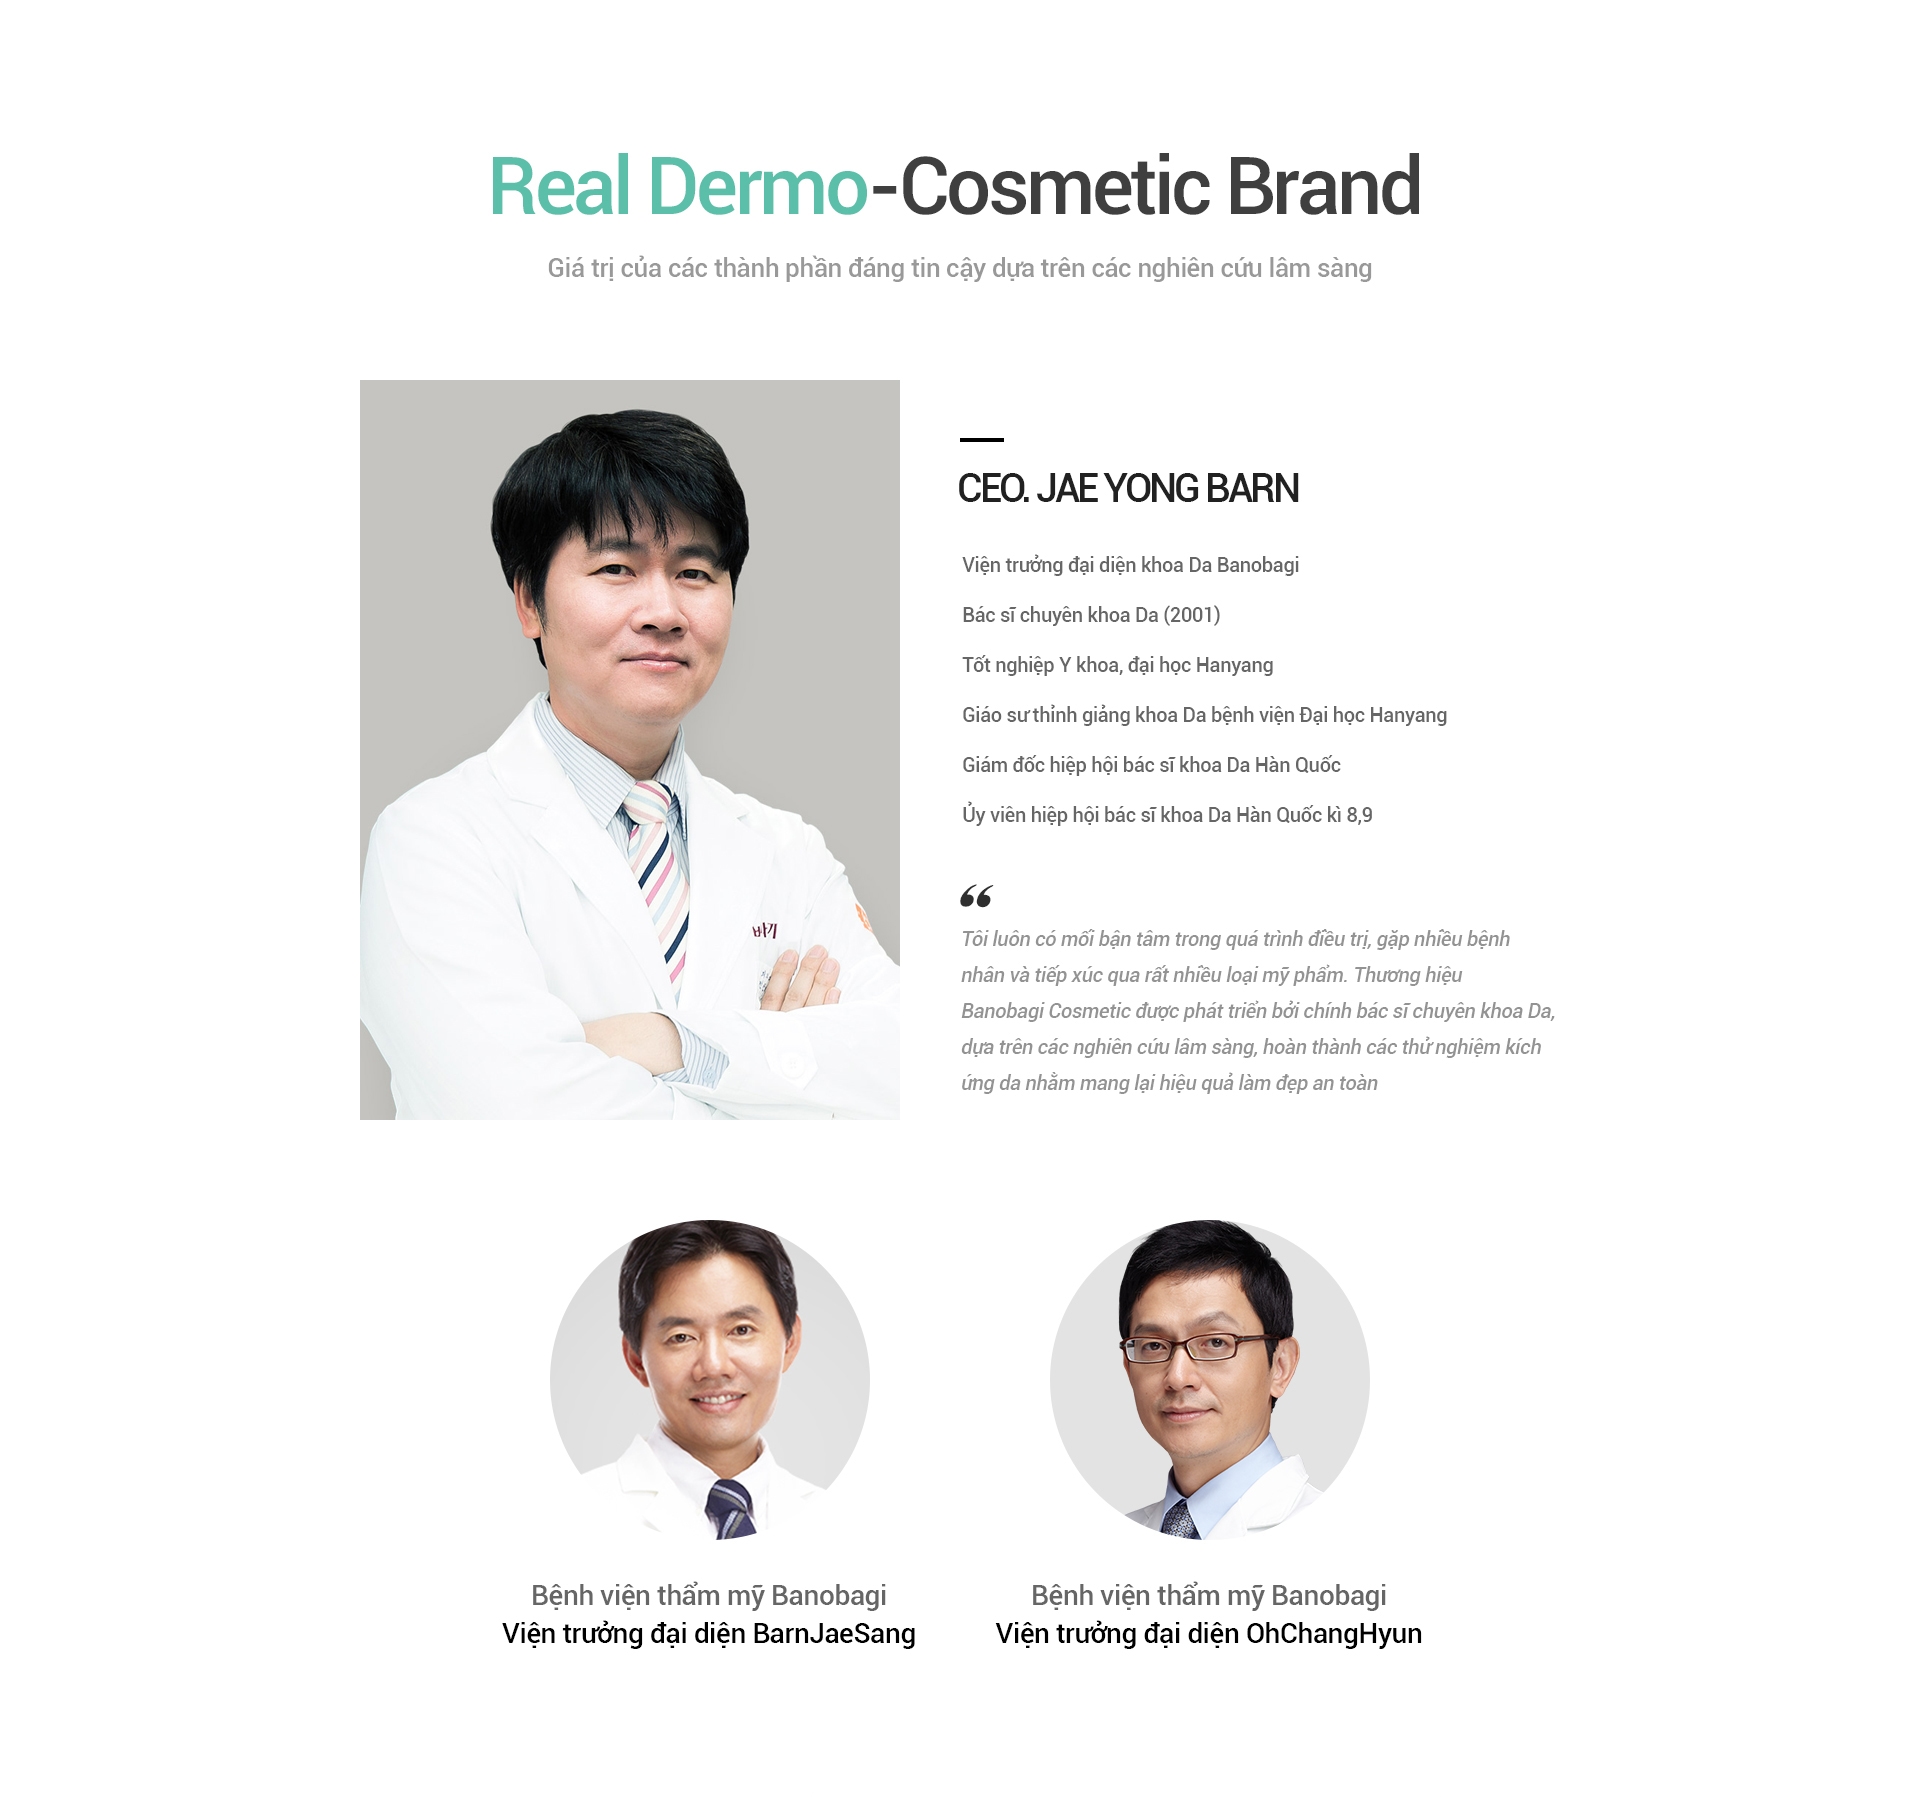 Real Dermo-Cosmetic Brand Giá trị của các thành phần đáng tin cậy dựa trên các nghiên cứu lâm sàng